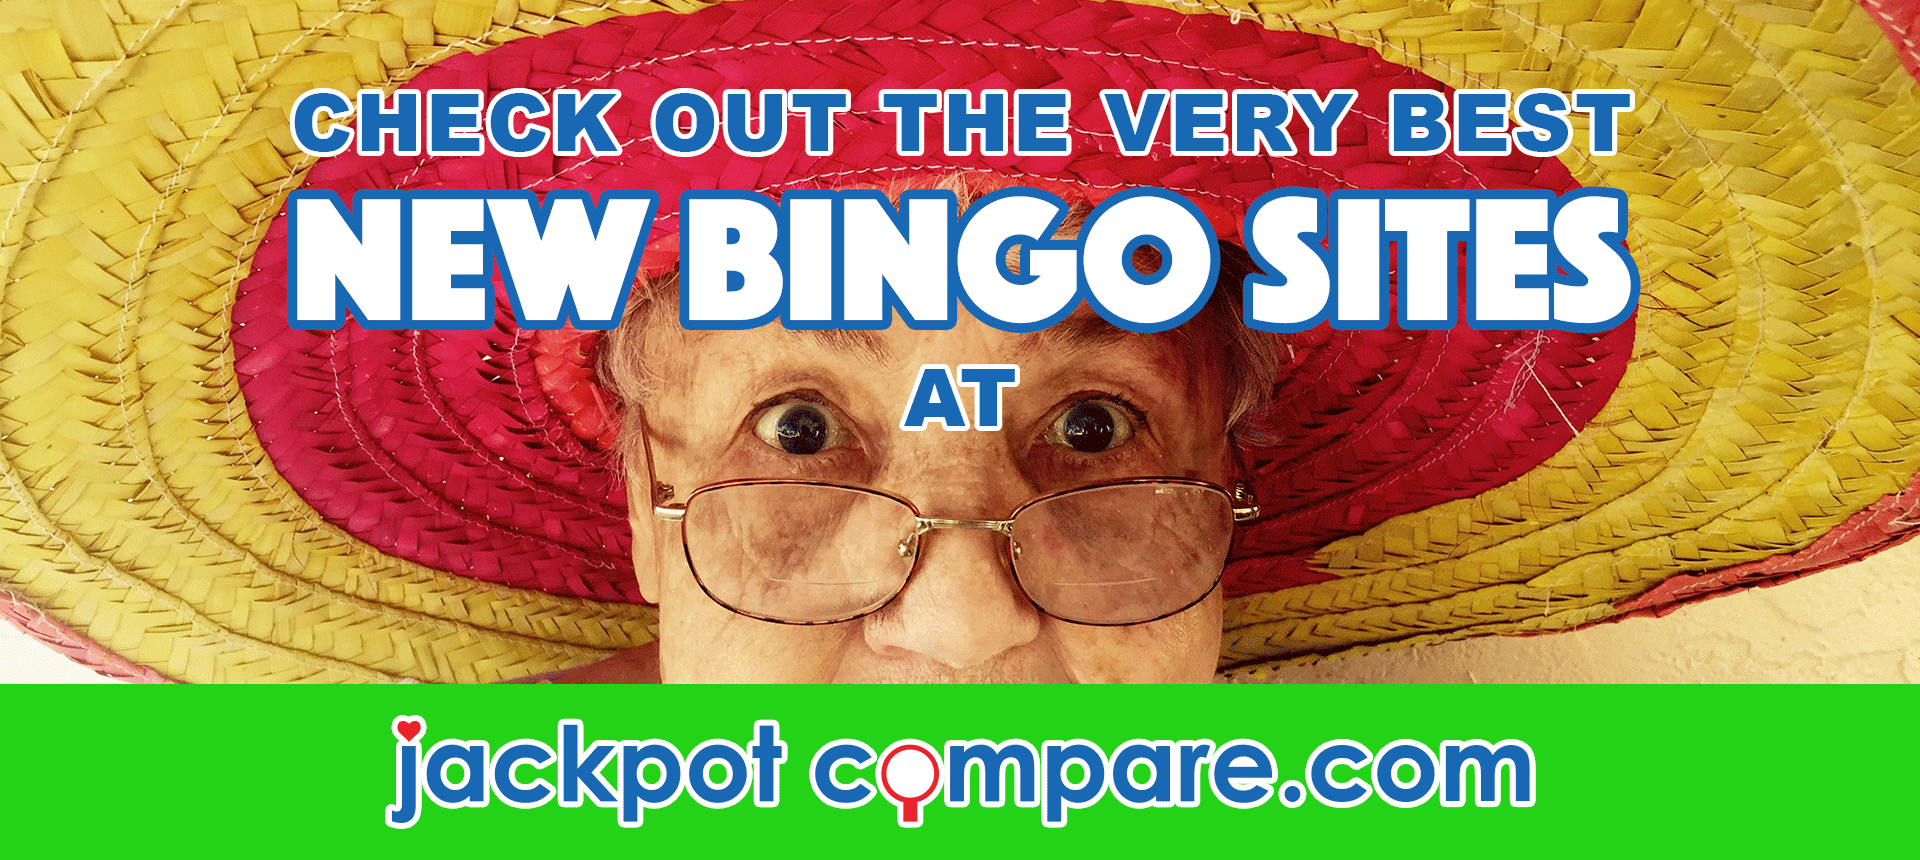 new bingo sites